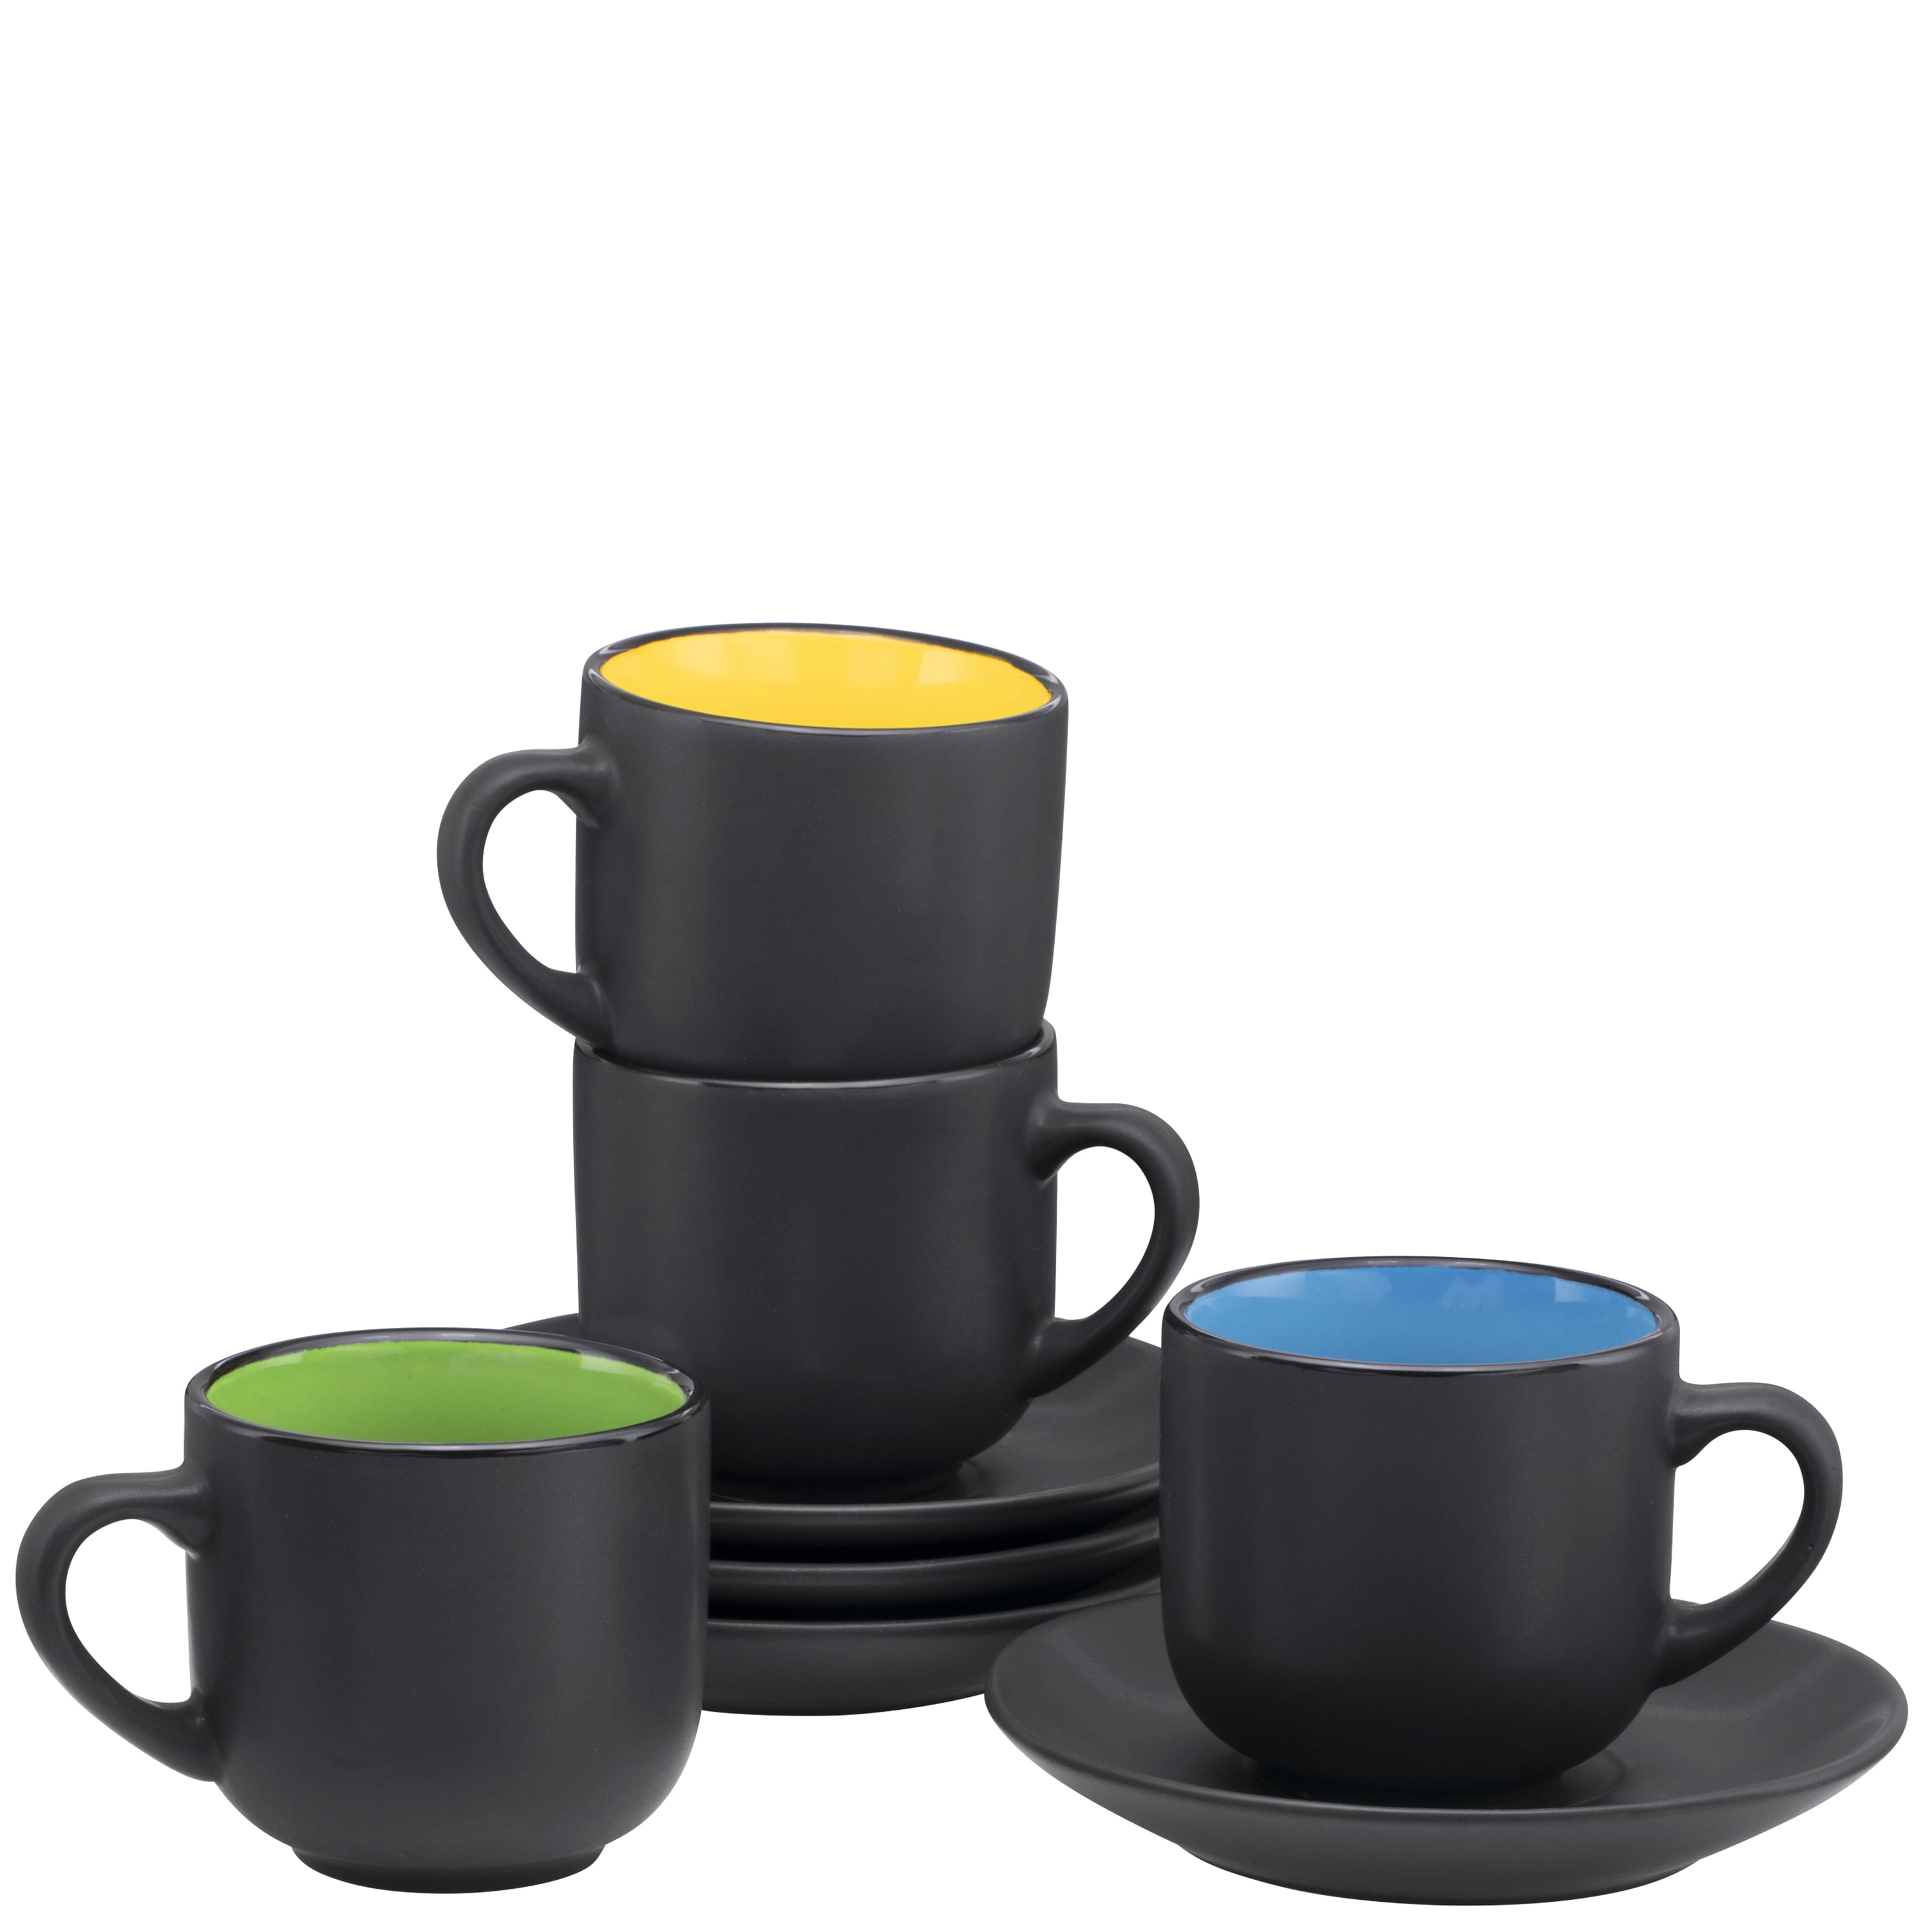 BTäT- Insulated Espresso Cups (5 oz) set of 4